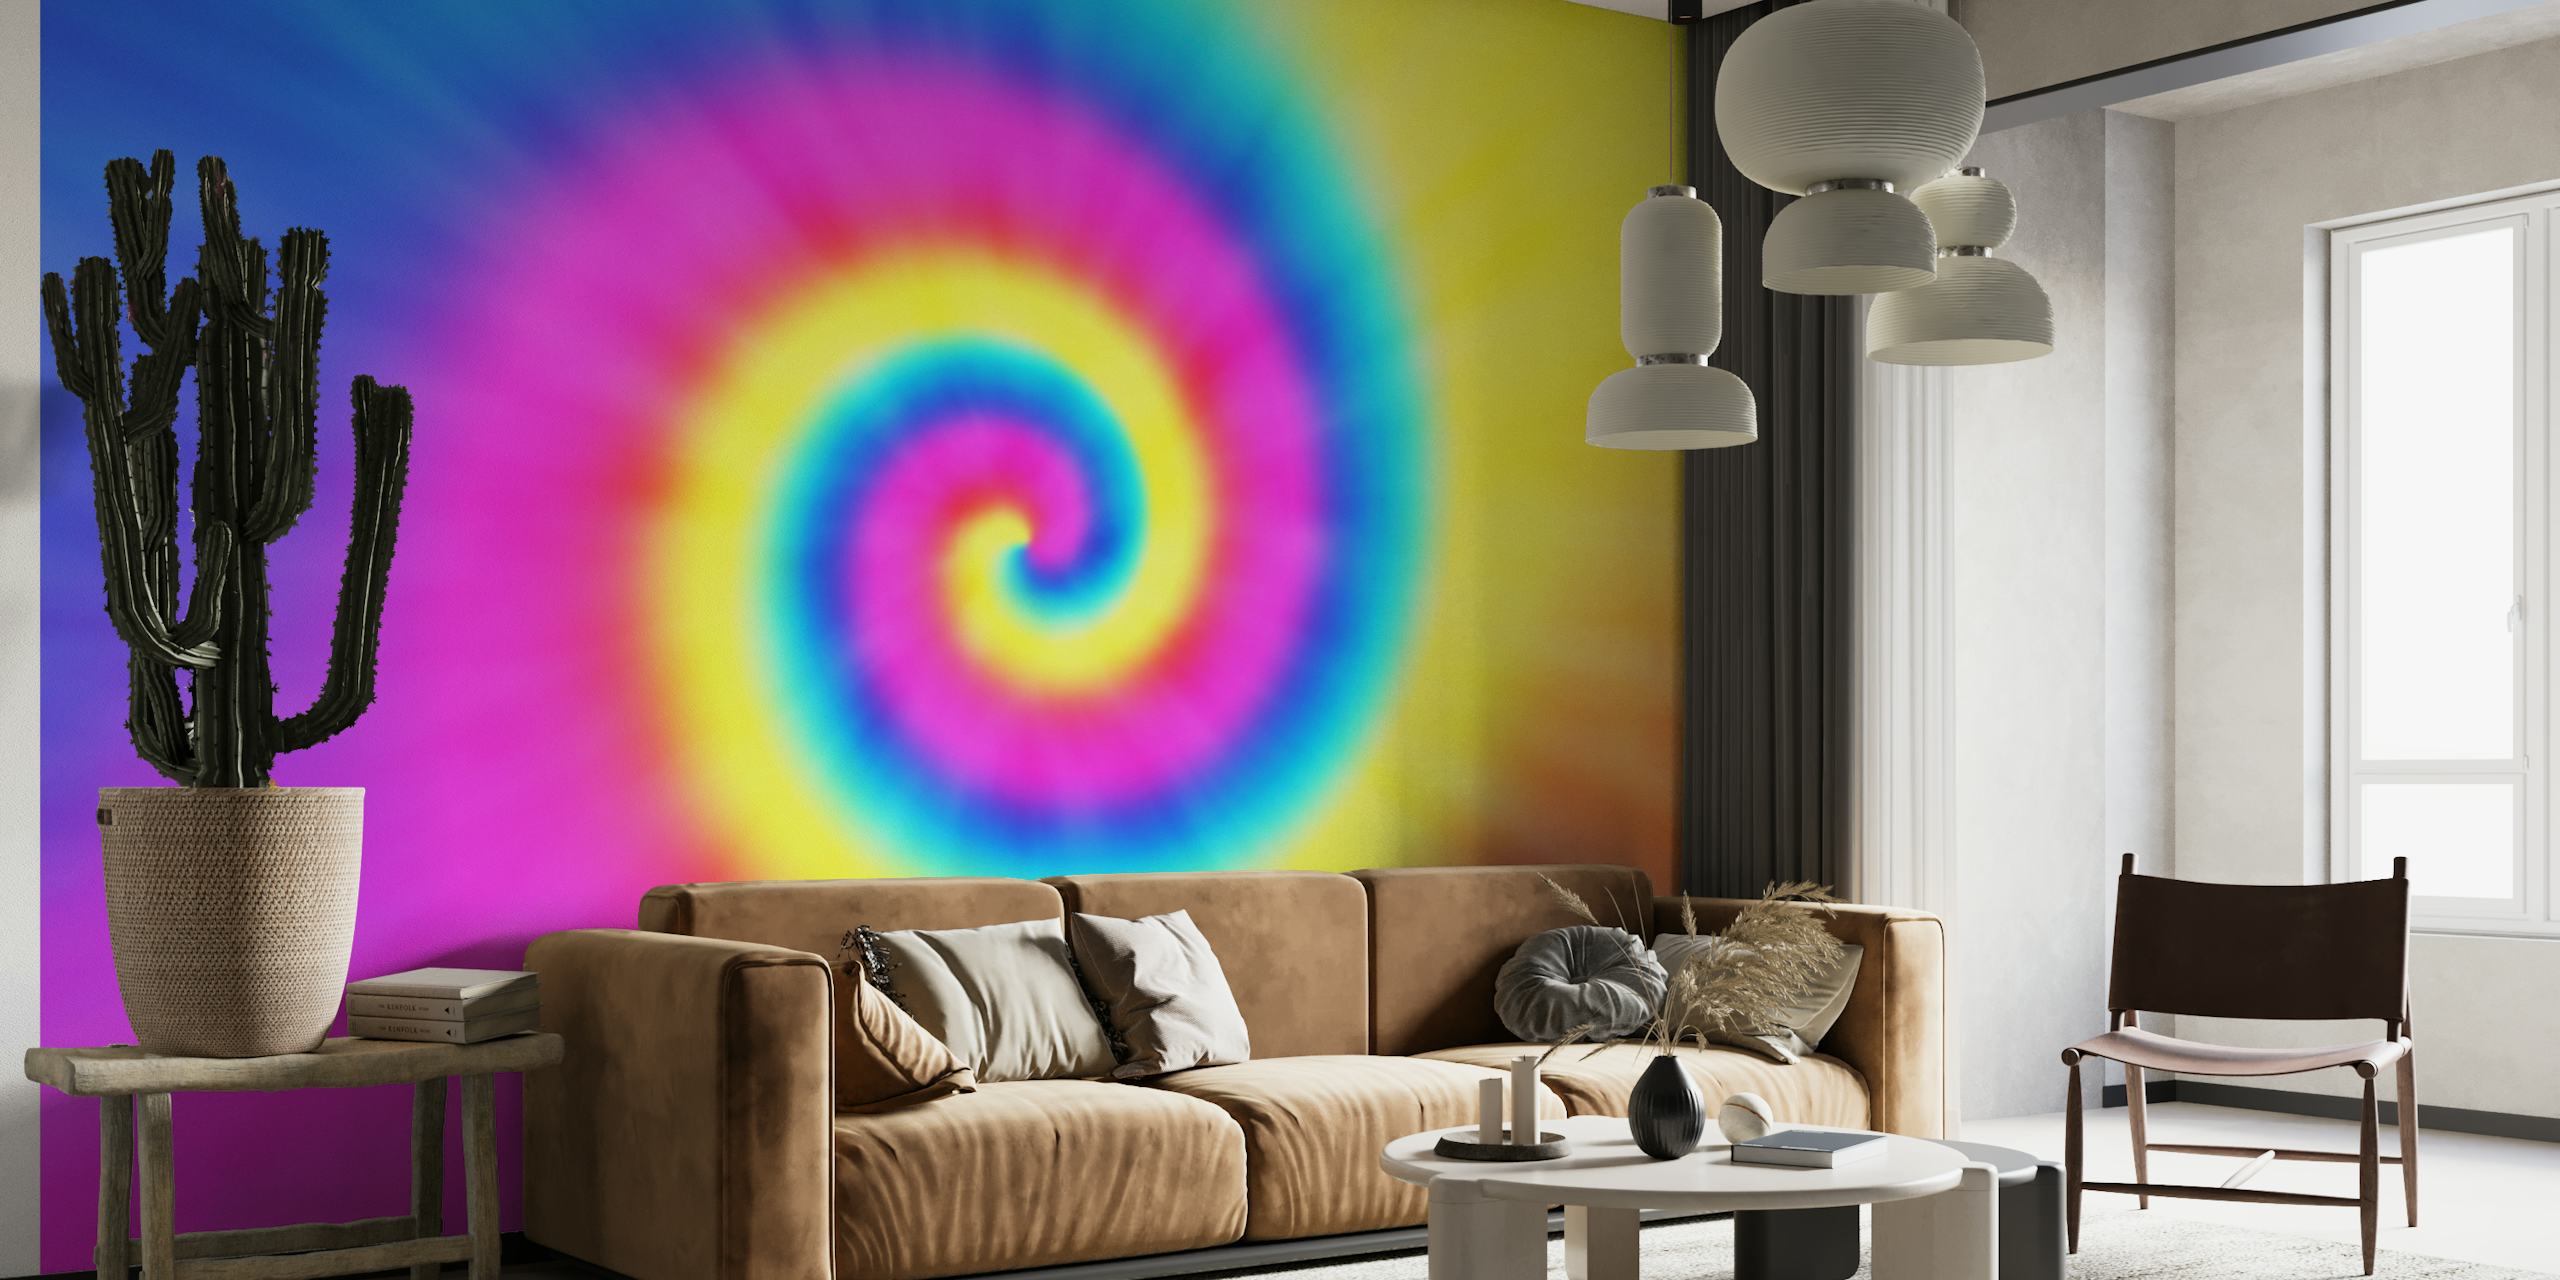 Murale psychédélique Tie Dye aux couleurs vibrantes et tourbillonnantes